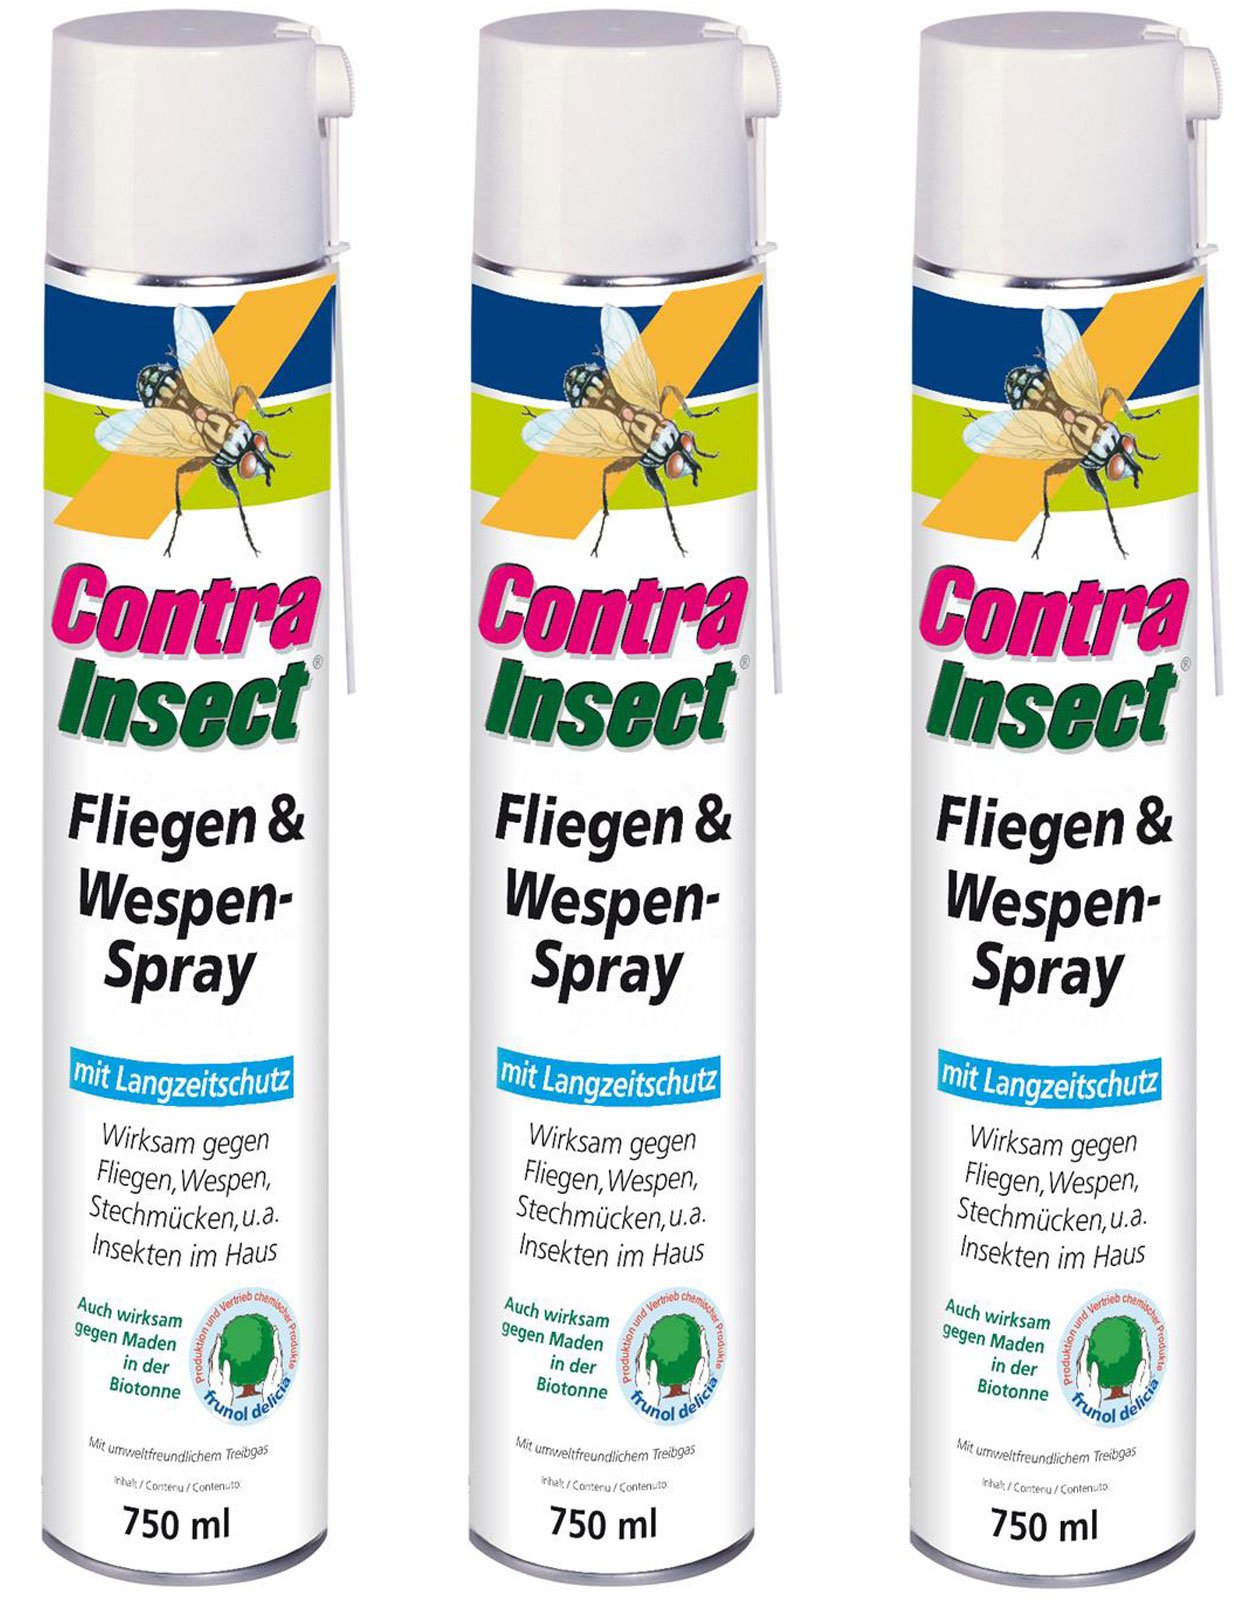 3 x 750 ml Contra Insect Fliegen- & Wespen-Spray Insektenschutz